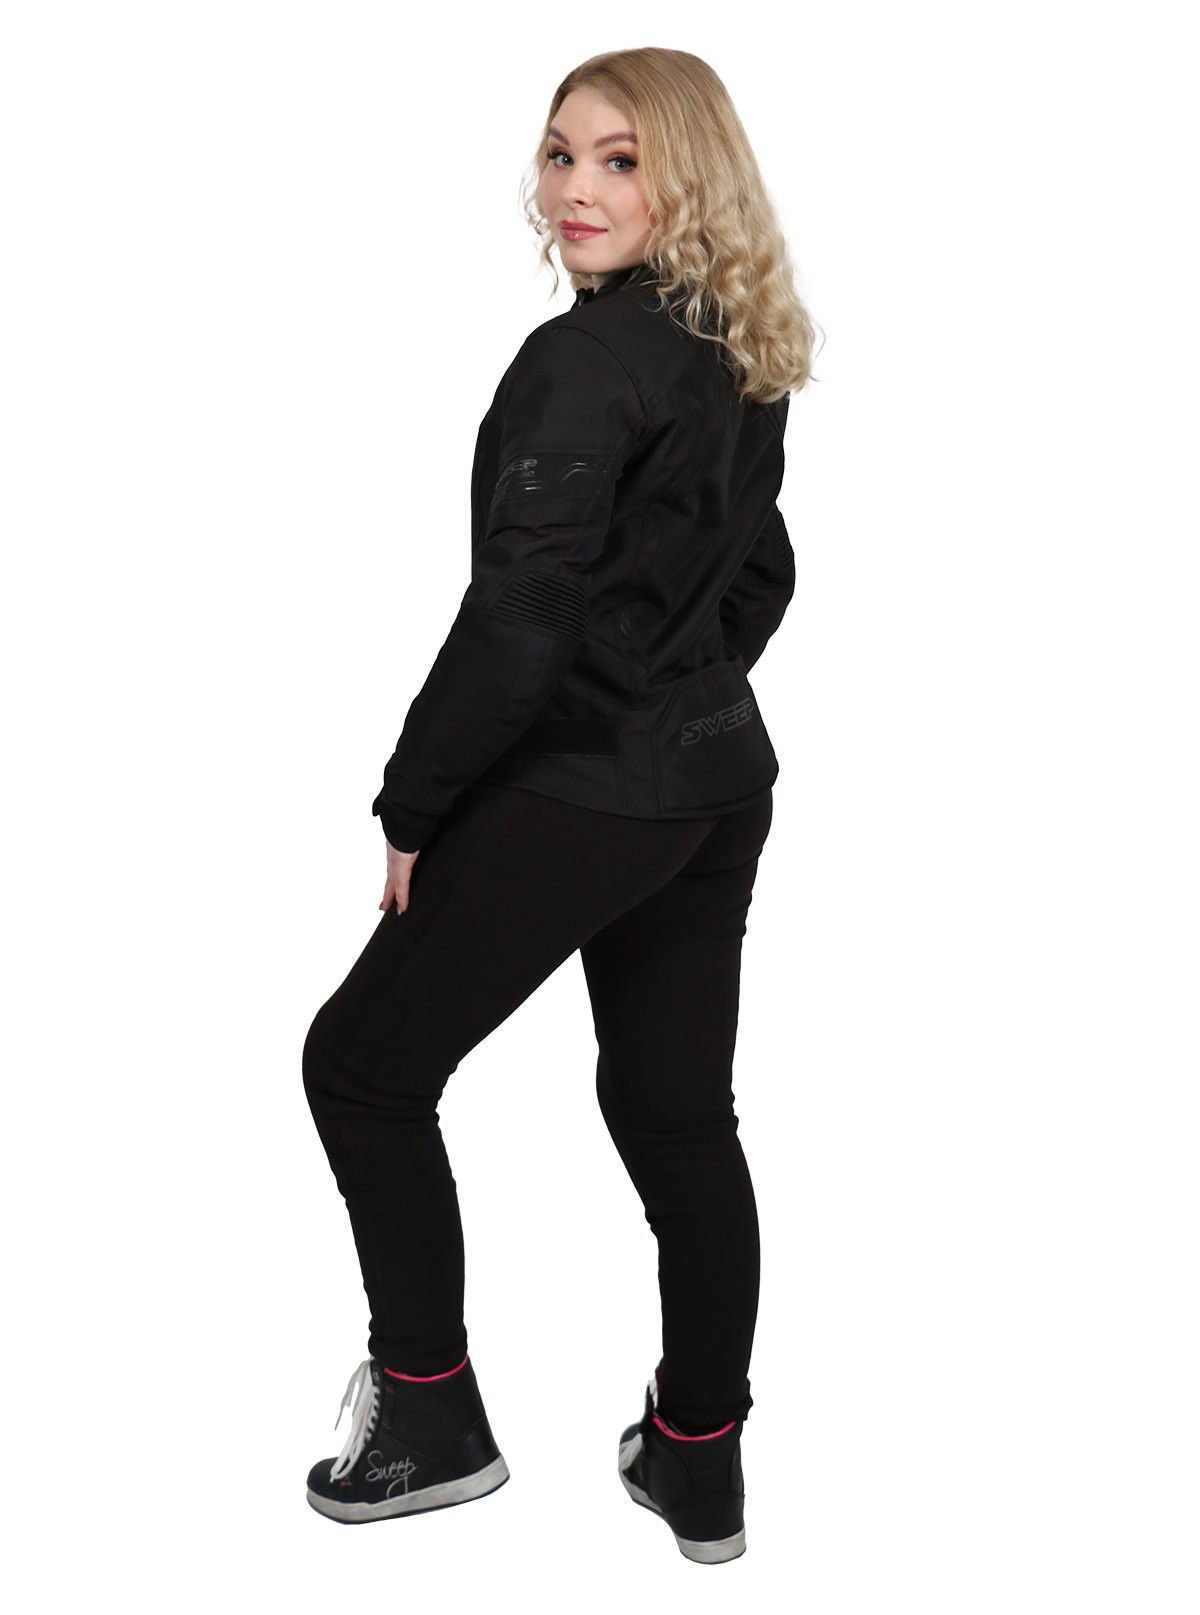 Tek Gear Drytek Women's Black/Gray/White Jacket - Size Small - Chest 32